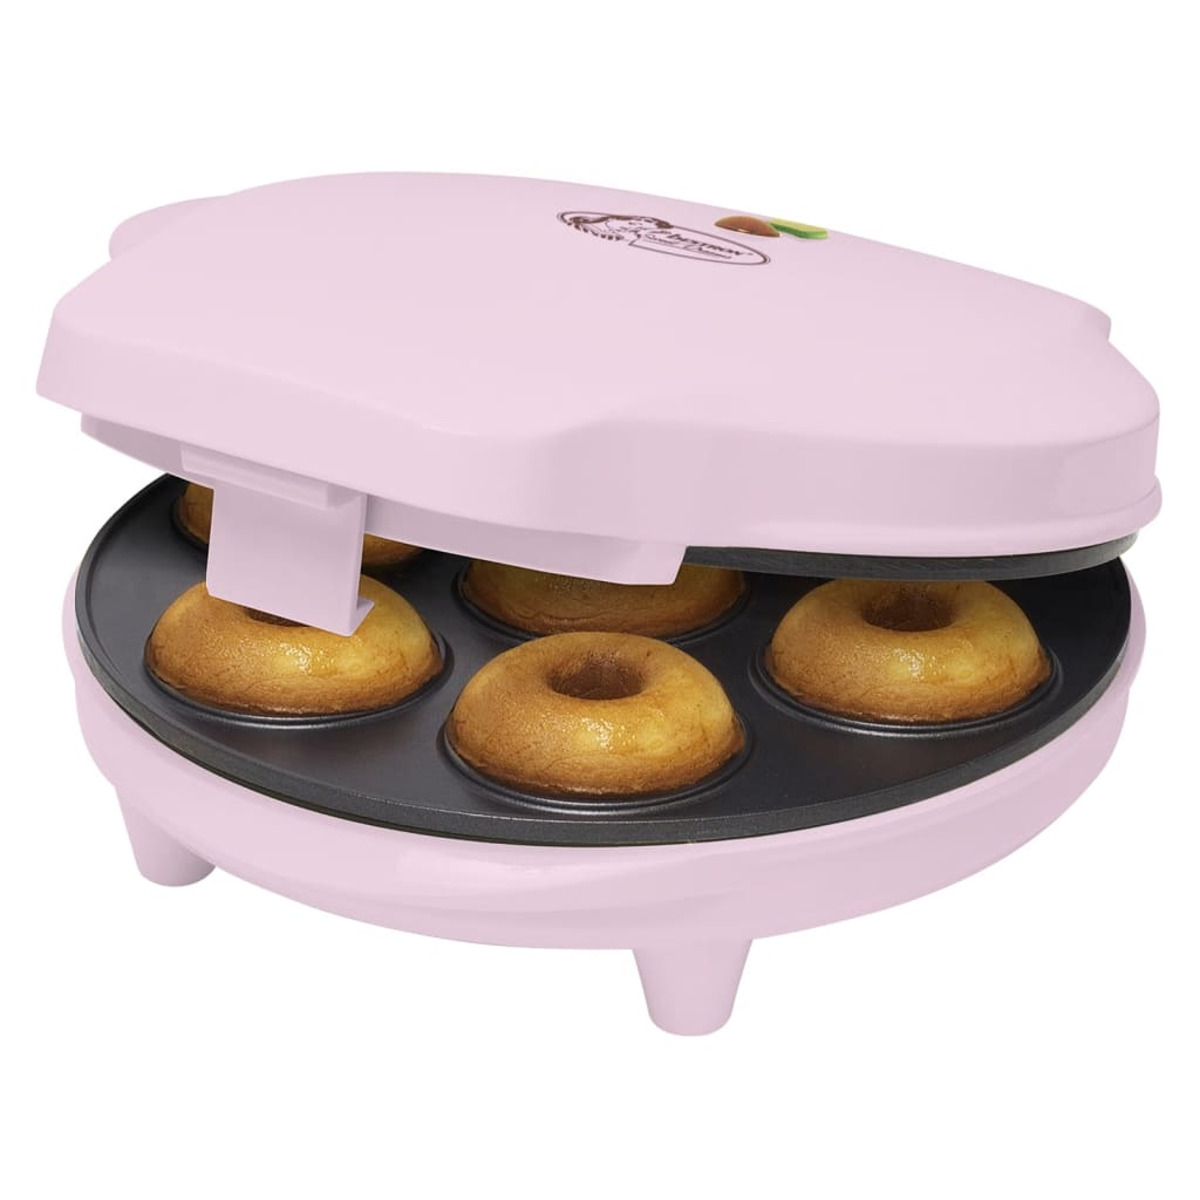 BESTRON 440253 Donut Rosa Maker